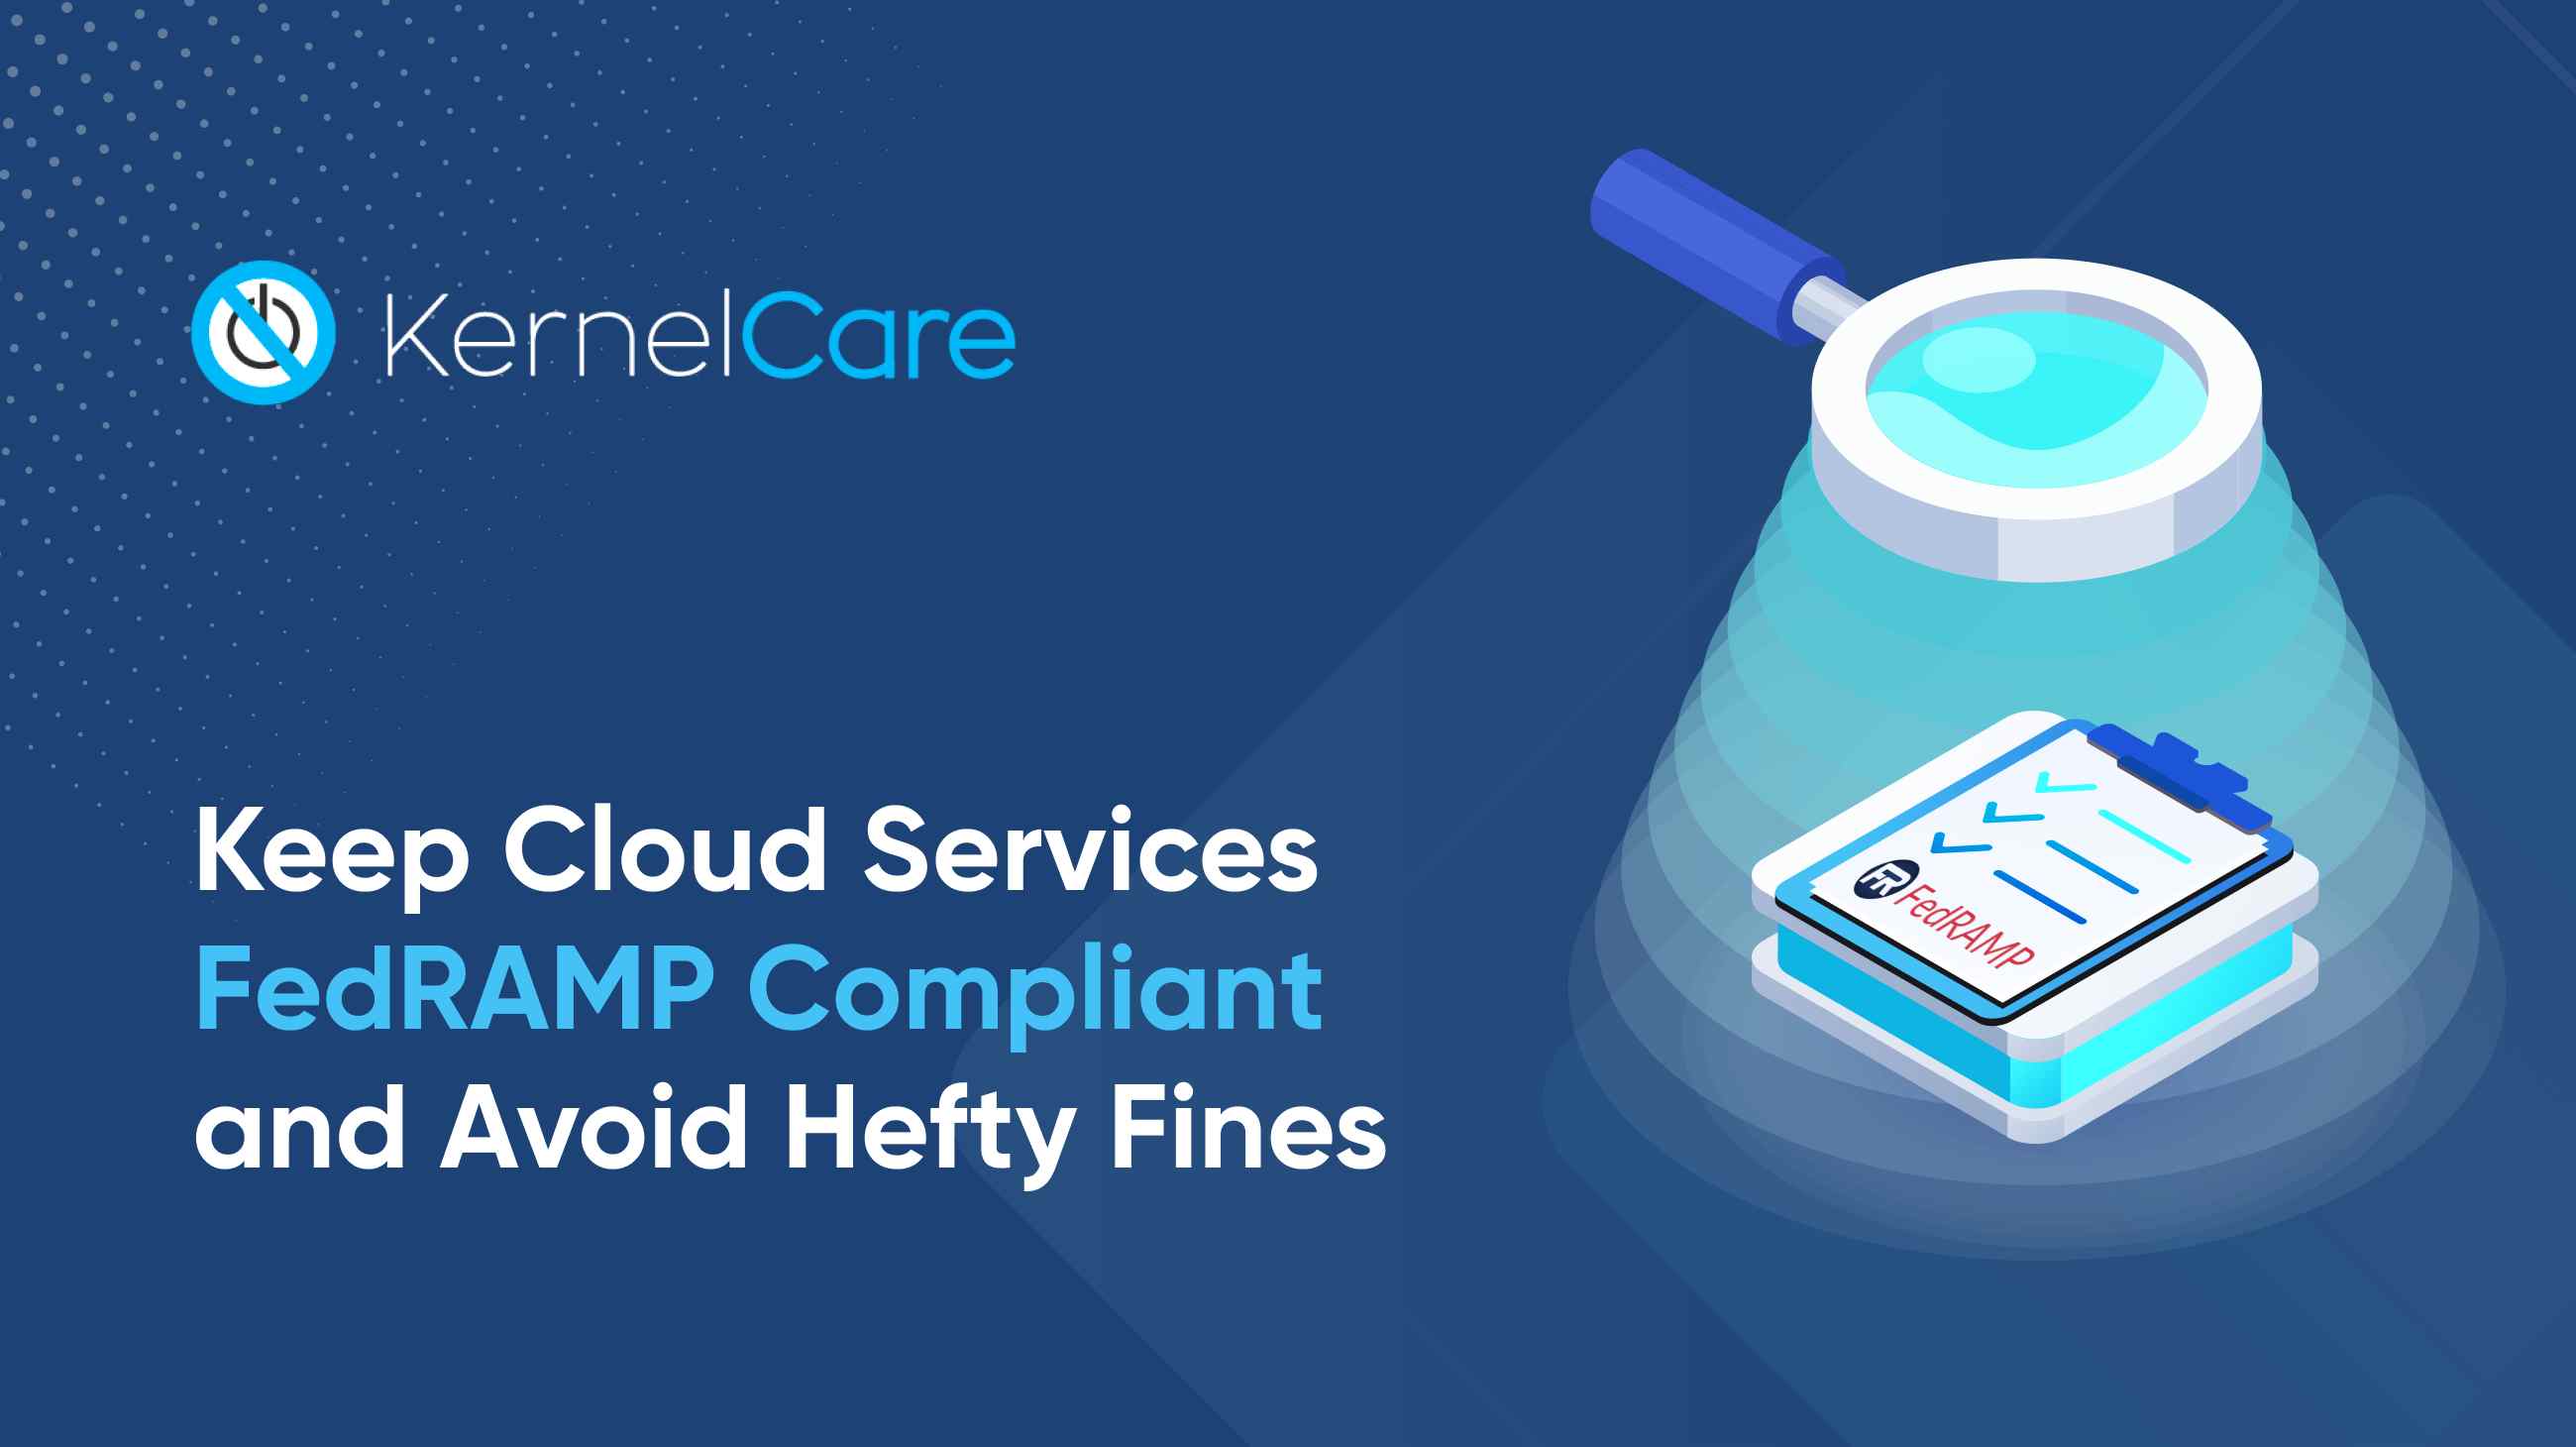 Mantenga los servicios en nube conformes con FedRAMP y evite cuantiosas multas